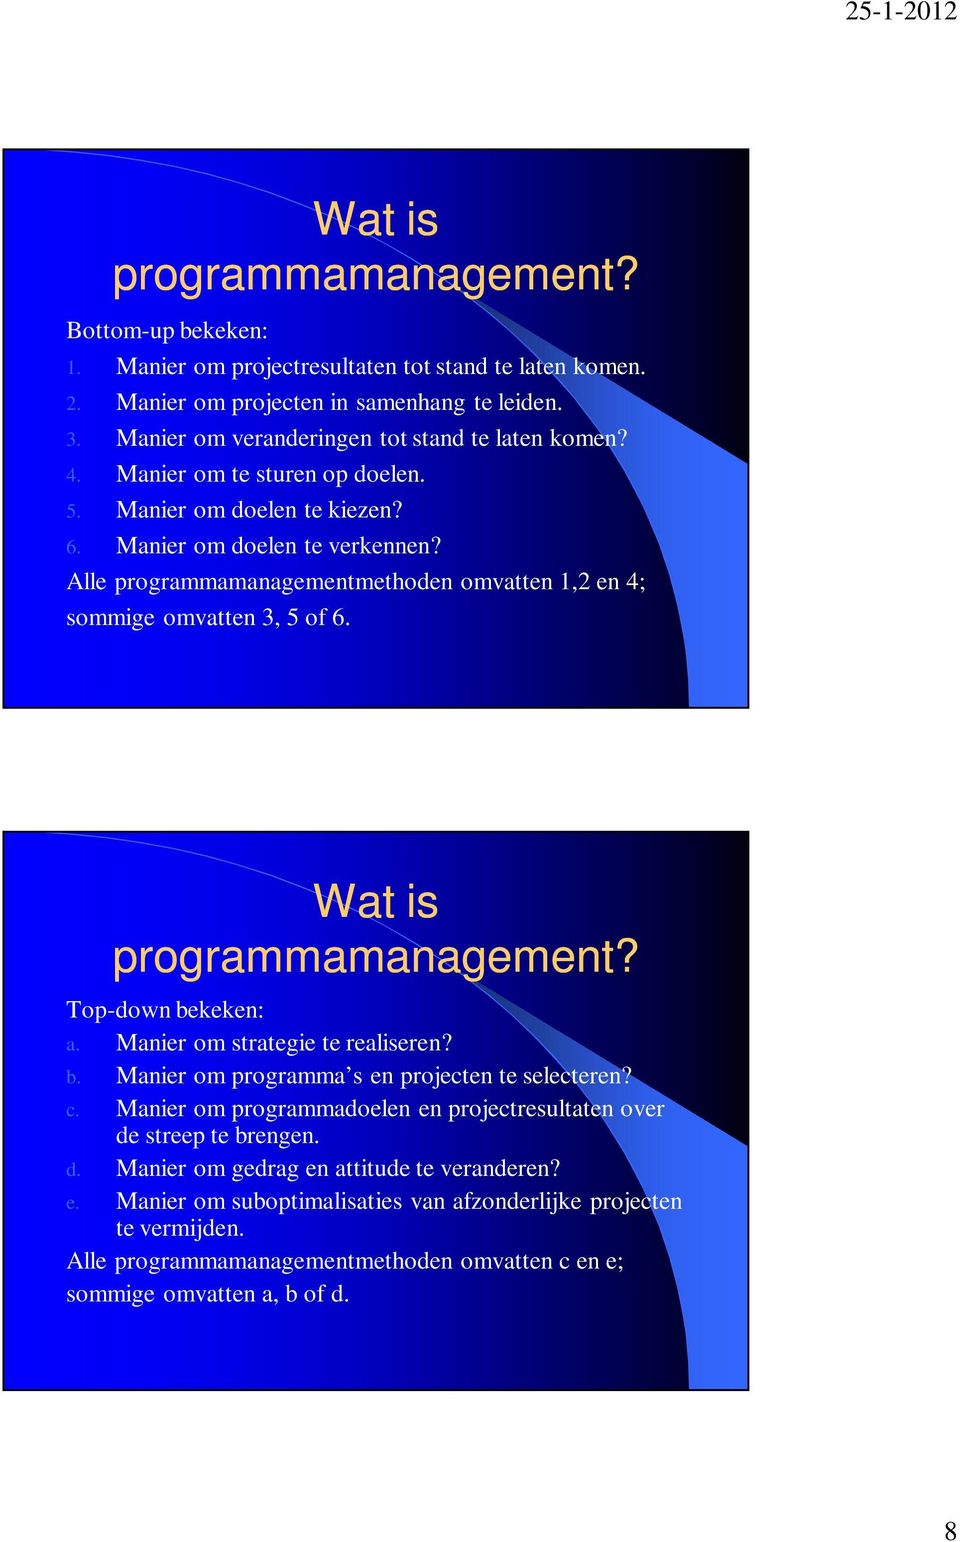 Alle programmamanagementmethoden omvatten 1,2 en 4; sommige omvatten 3, 5 of 6. Wat is programmamanagement? Top-down bekeken: a. Manier om strategie te realiseren? b. Manier om programma s en projecten te selecteren?